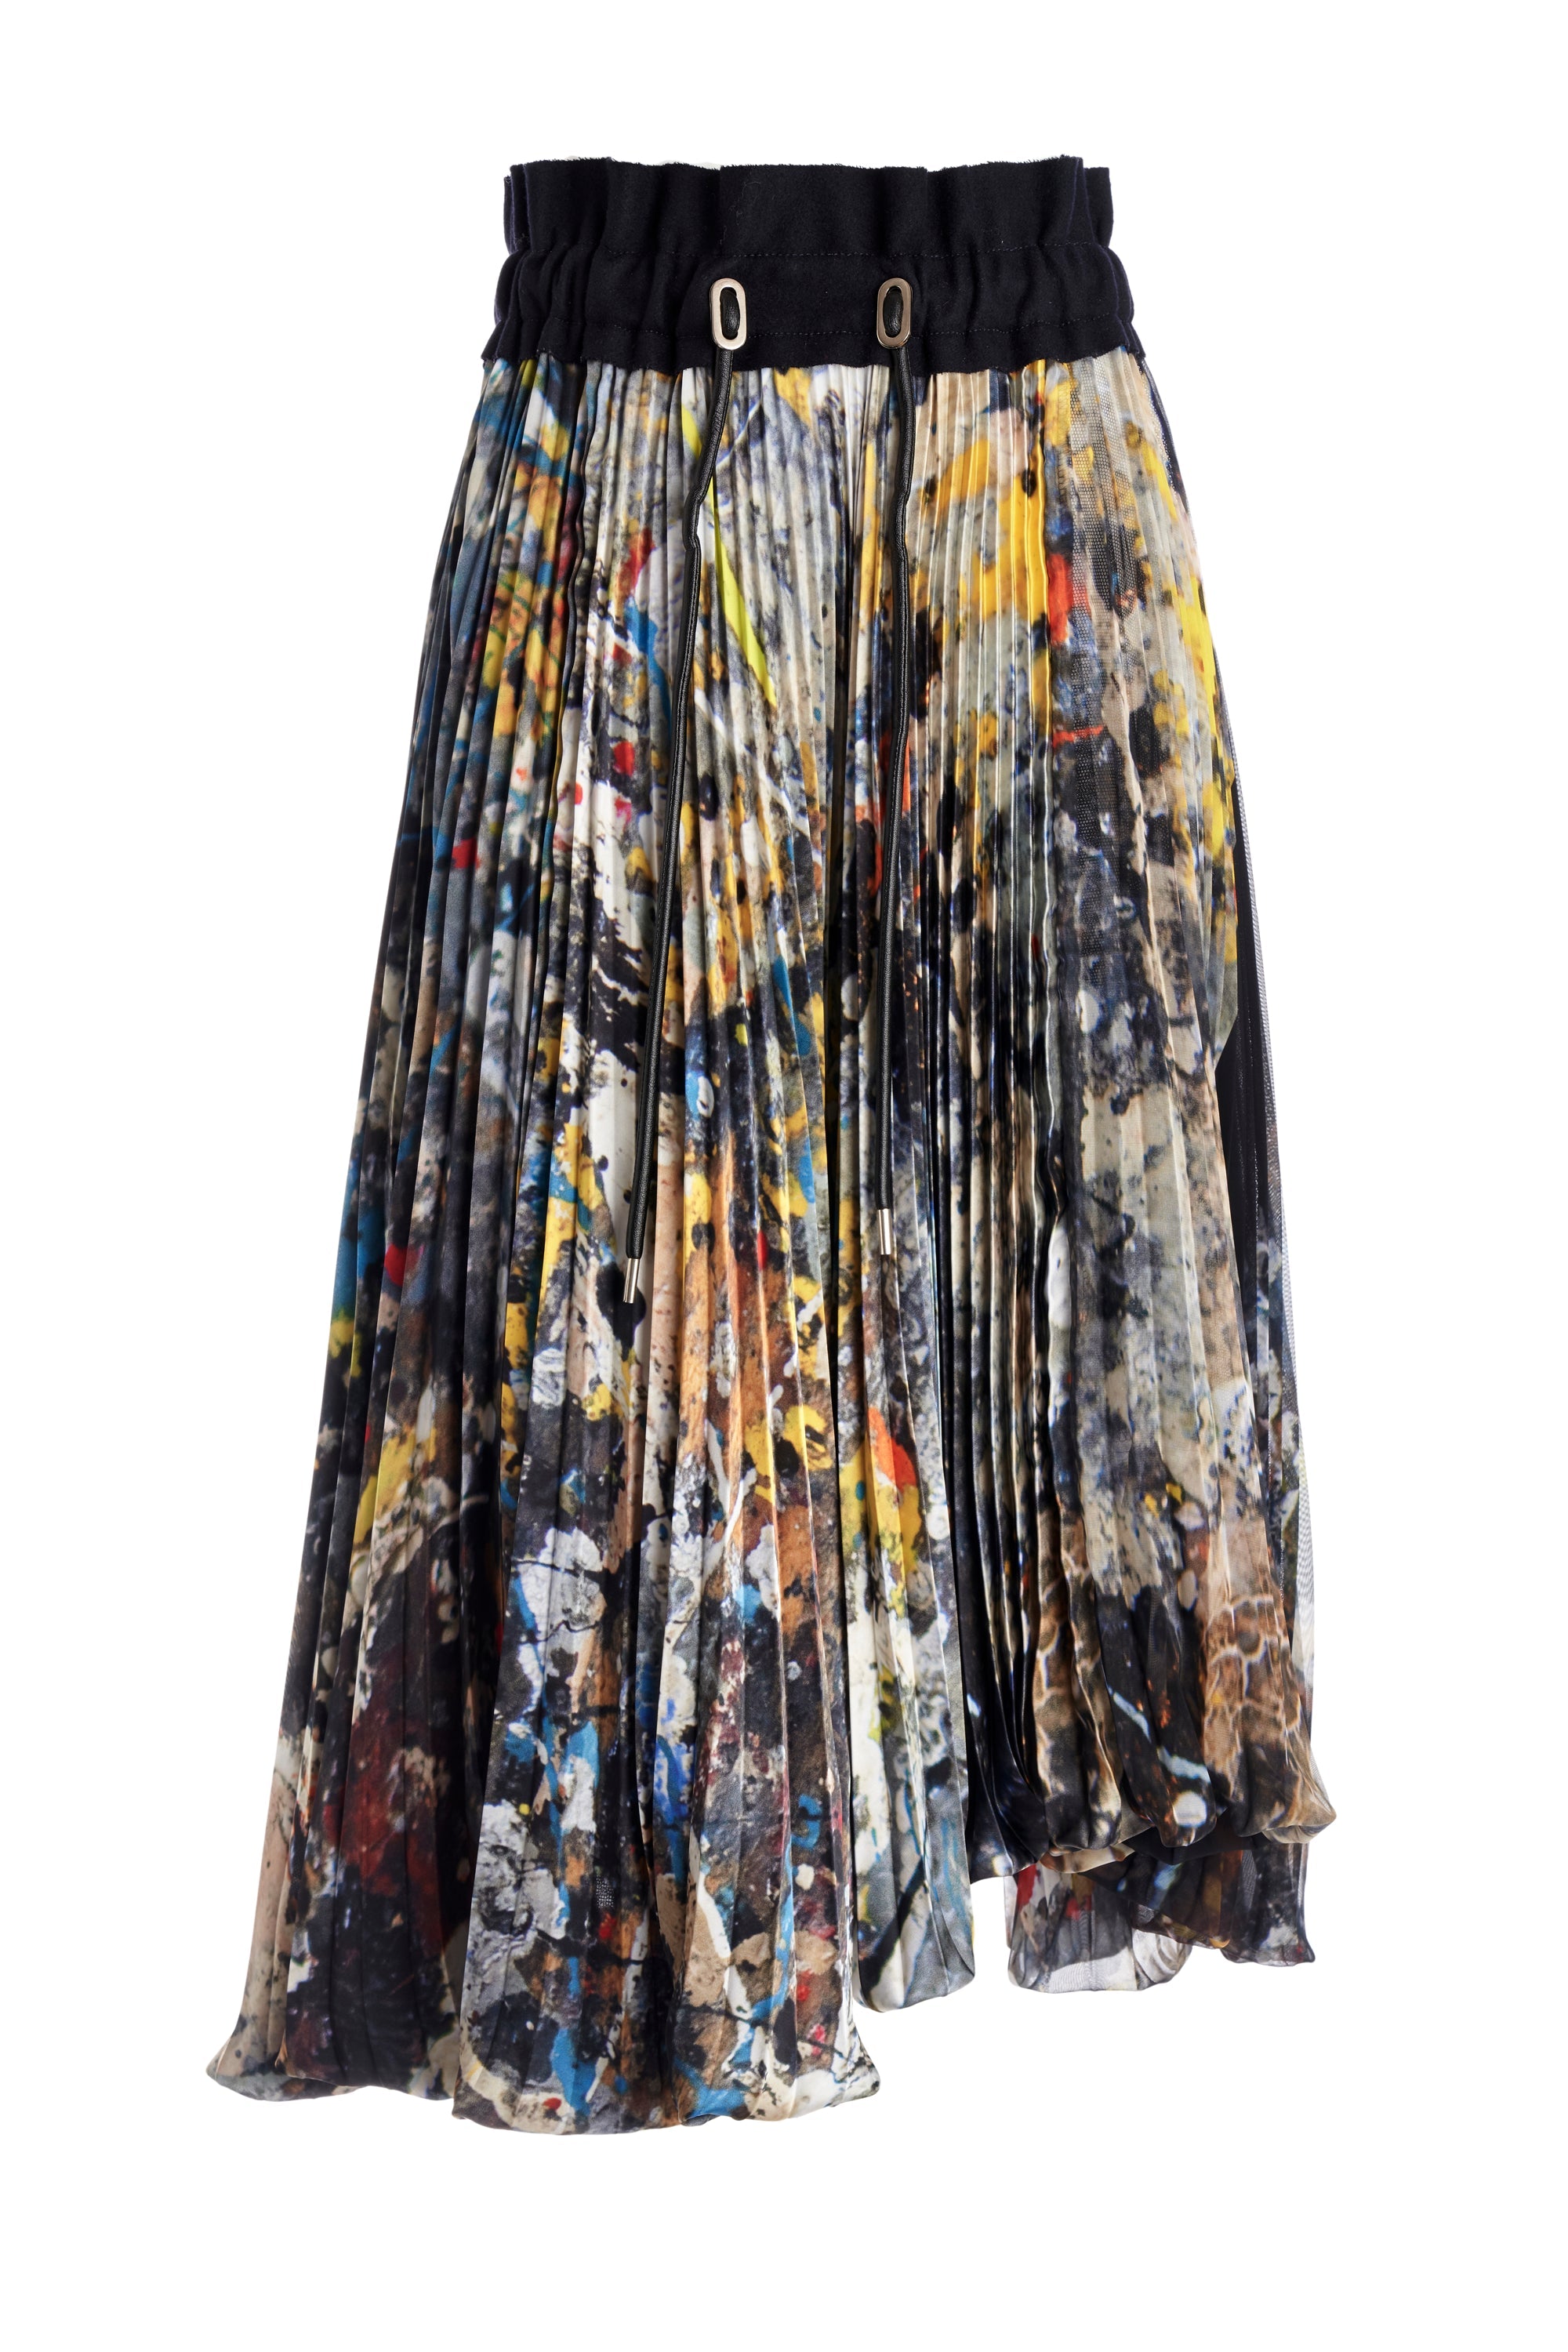 Sacai Pleated Jackson Pollock Skirt - Foxy Couture Carmel